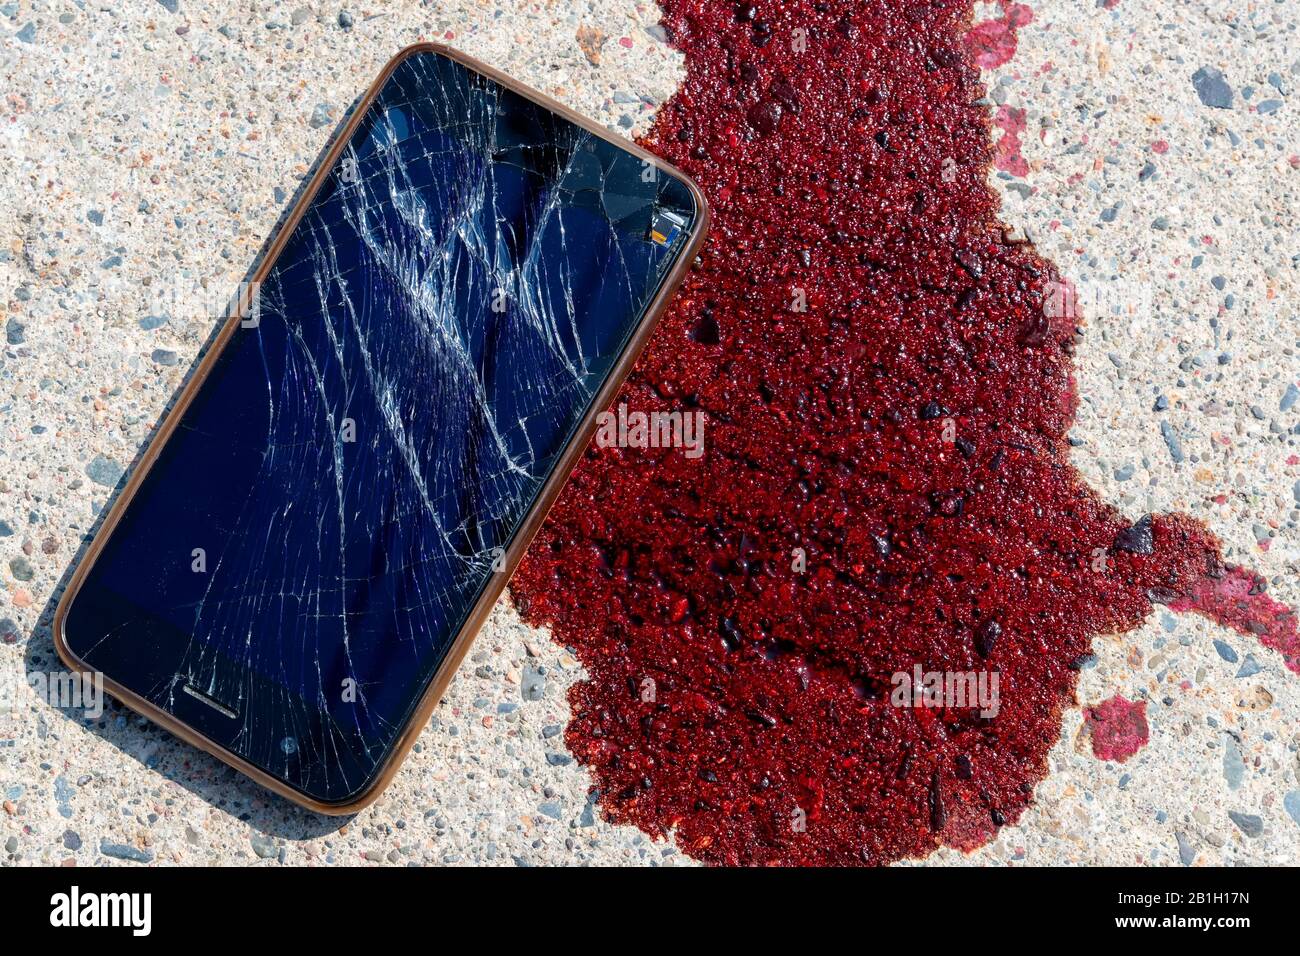 Un téléphone portable cassé et écrasé par une flaque de sang sur un trottoir. L'écran du téléphone portable est cassé et brisé. Le sang est frais. Banque D'Images